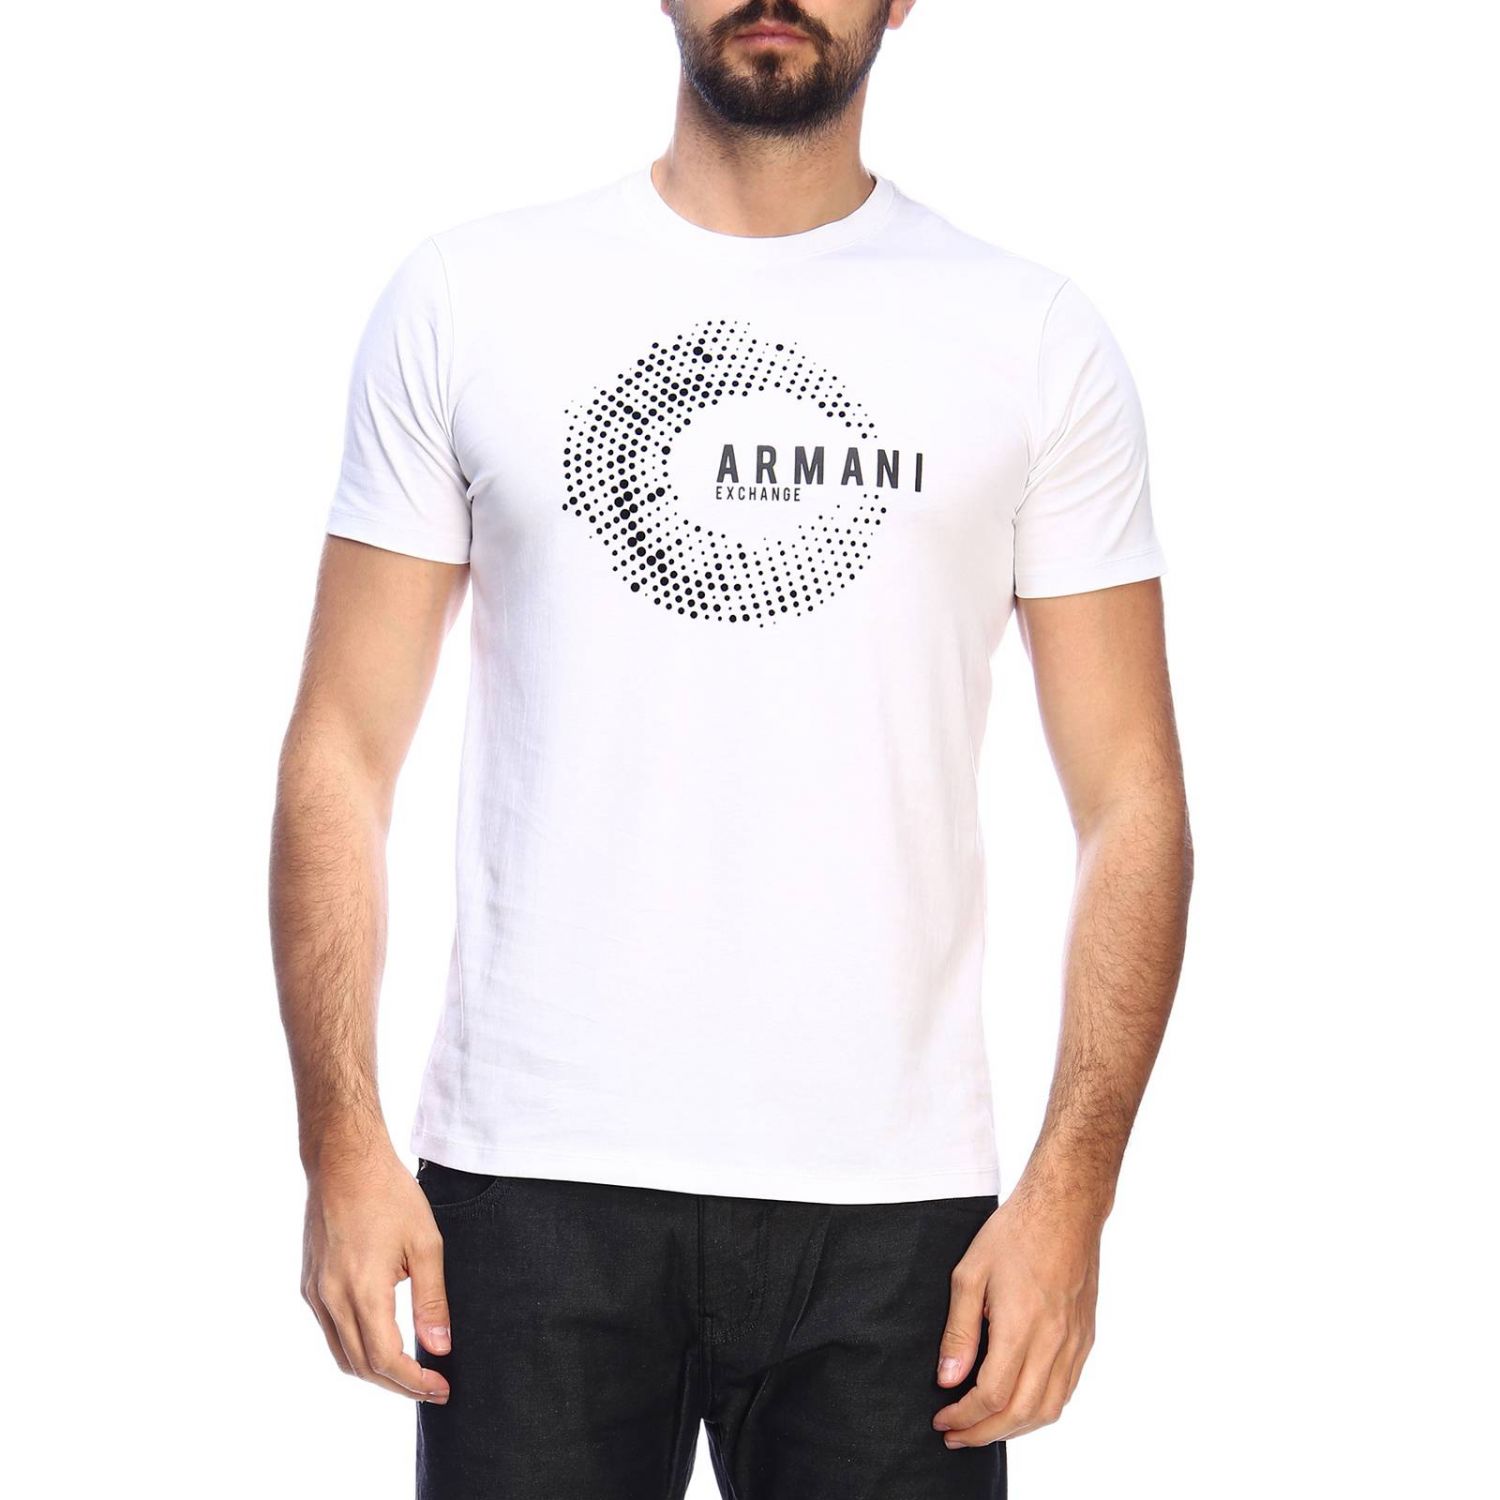 Armani Exchange Outlet: T-shirt men | T-Shirt Armani Exchange Men White ...